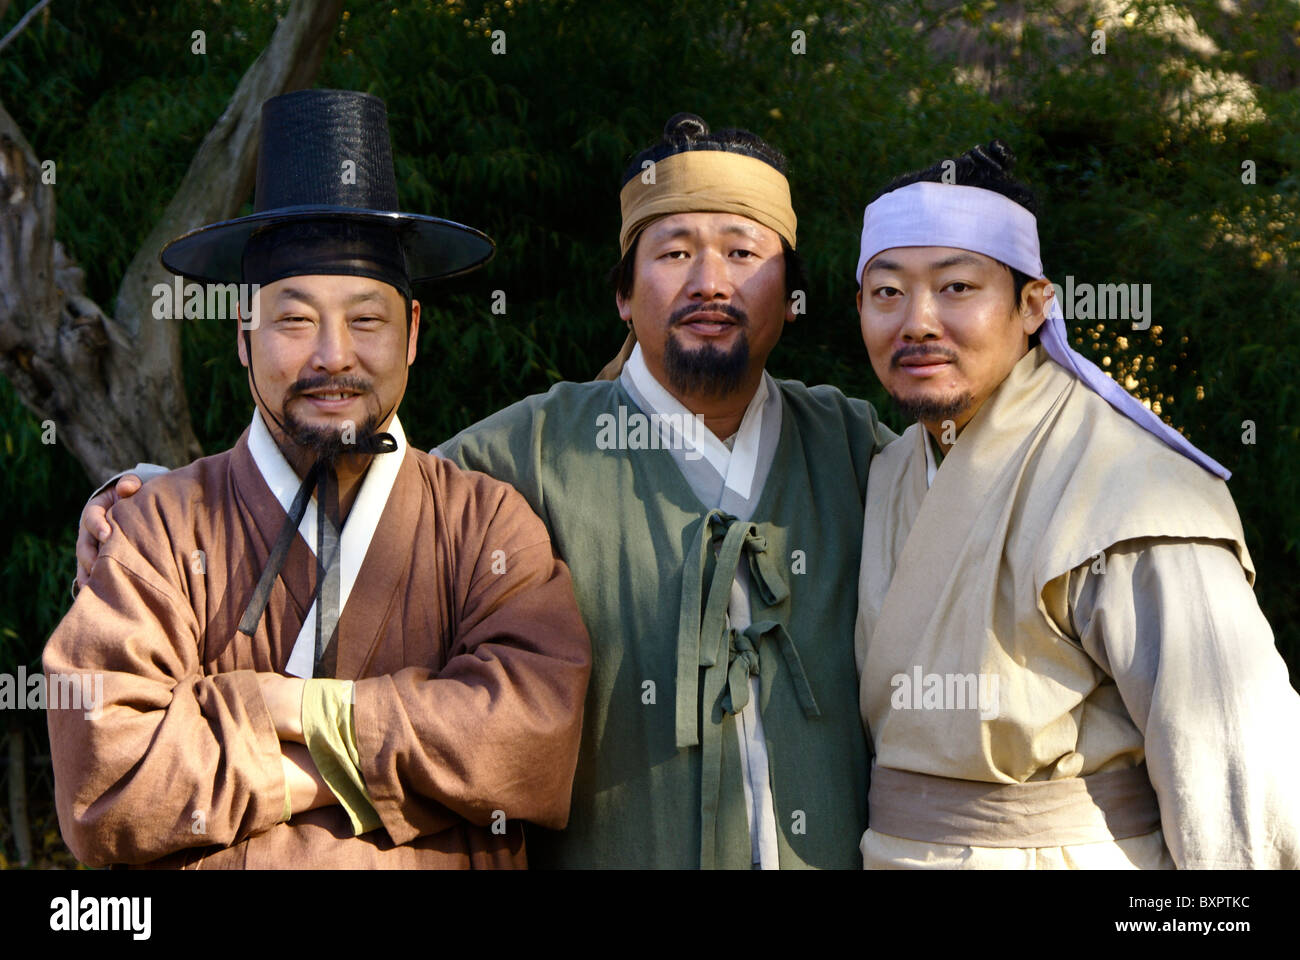 Acteurs de film Joseon-Dynasty, Village folklorique coréen, Corée du Sud Banque D'Images